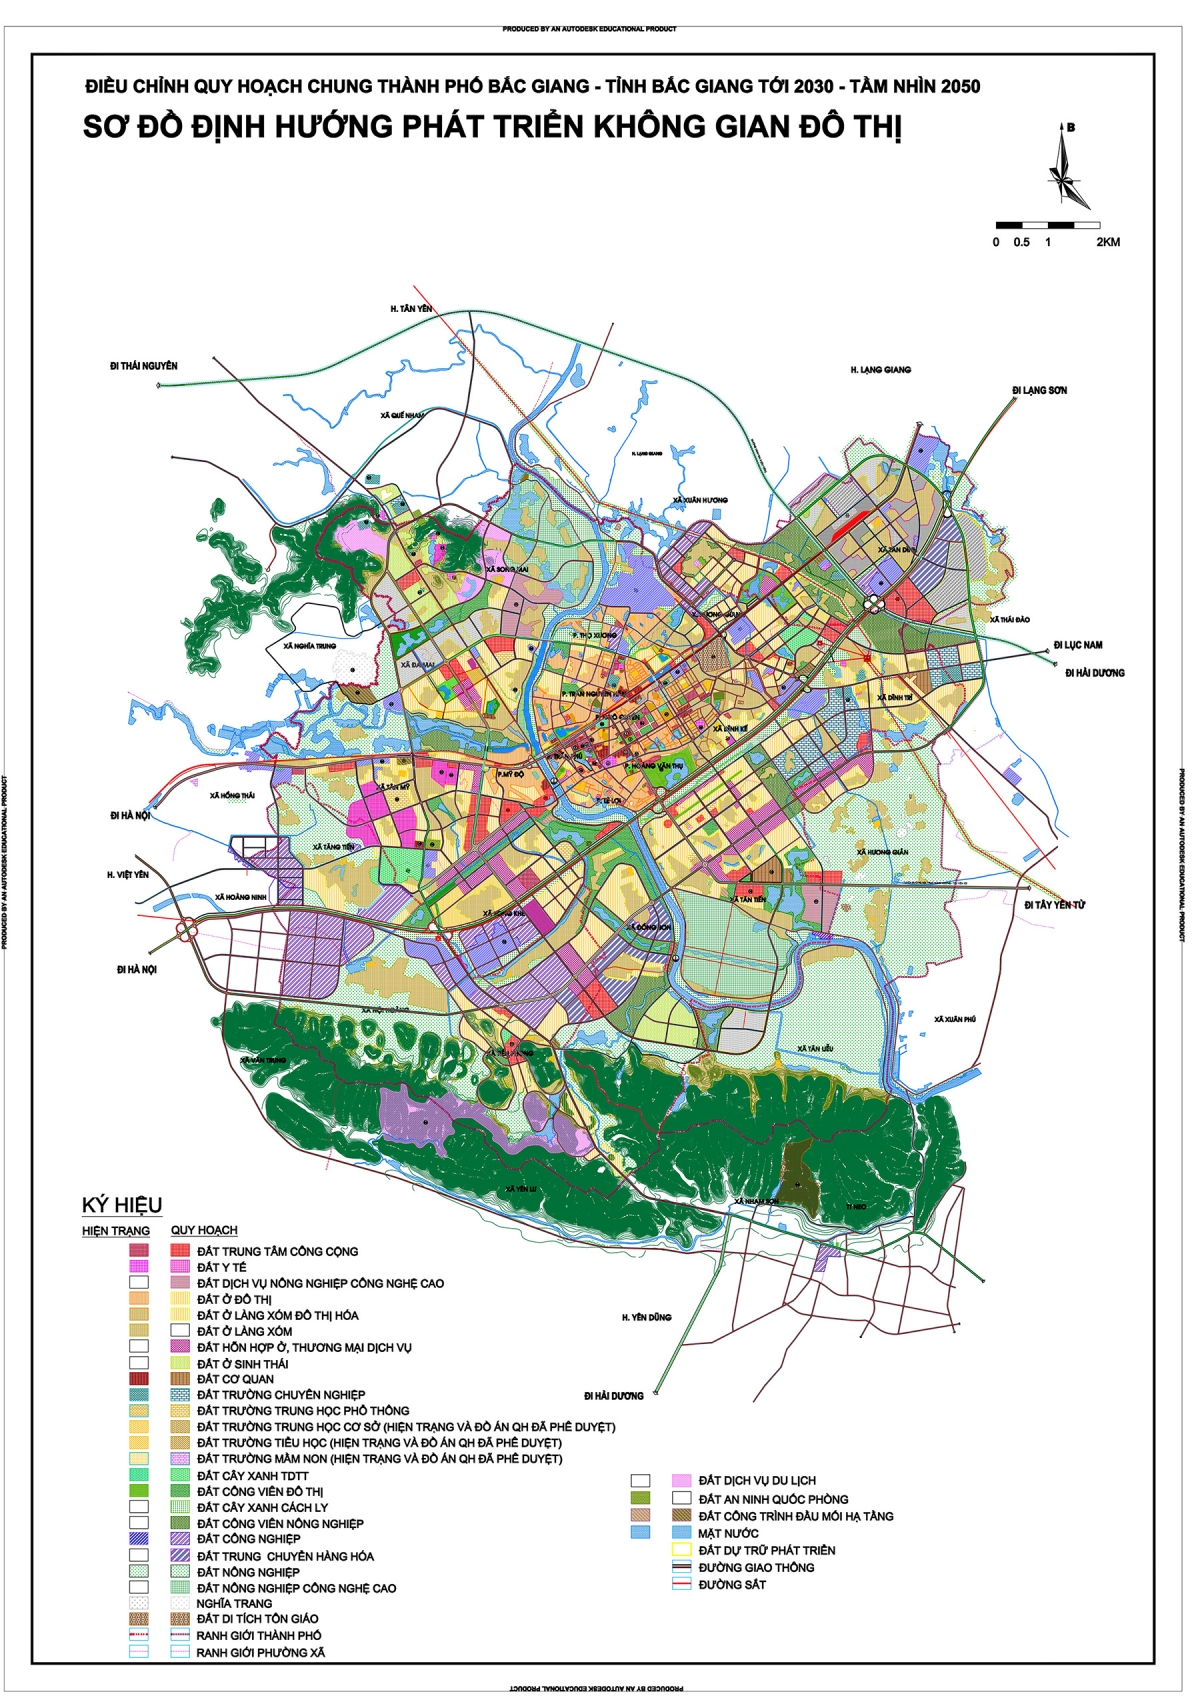 Đây là một bước đột phá trong việc quản lý đô thị và phát triển kinh tế của thành phố Nam Định. Hãy thưởng thức hình ảnh để tìm hiểu thêm!